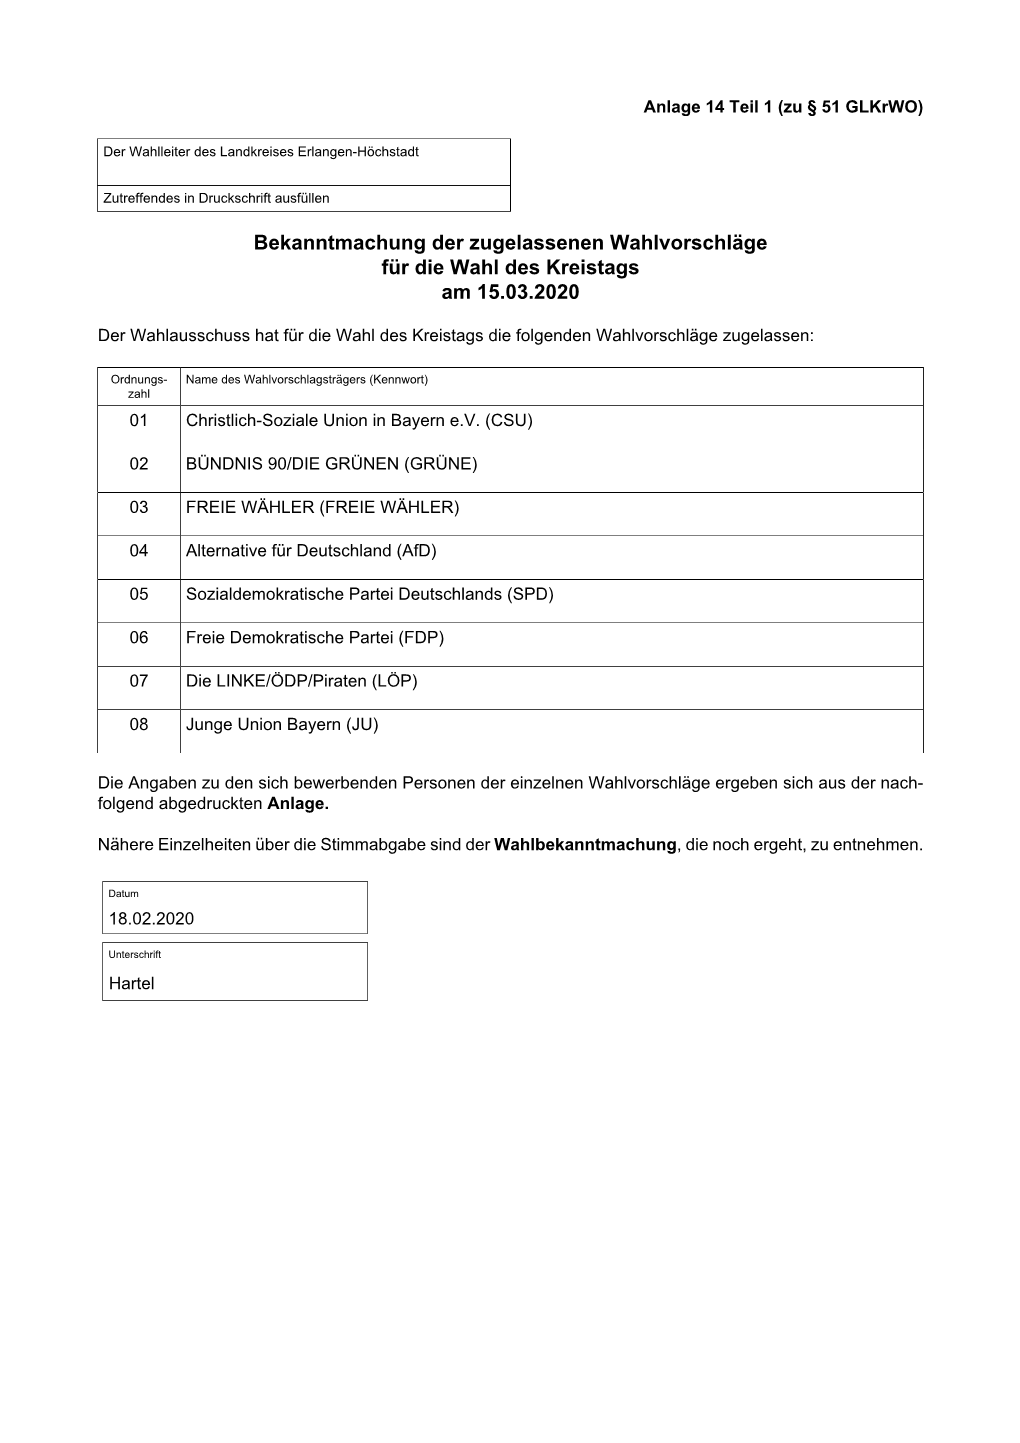 Bekanntmachung Der Zugelassenen Wahlvorschläge Für Die Wahl Des Kreistags Am 15.03.2020